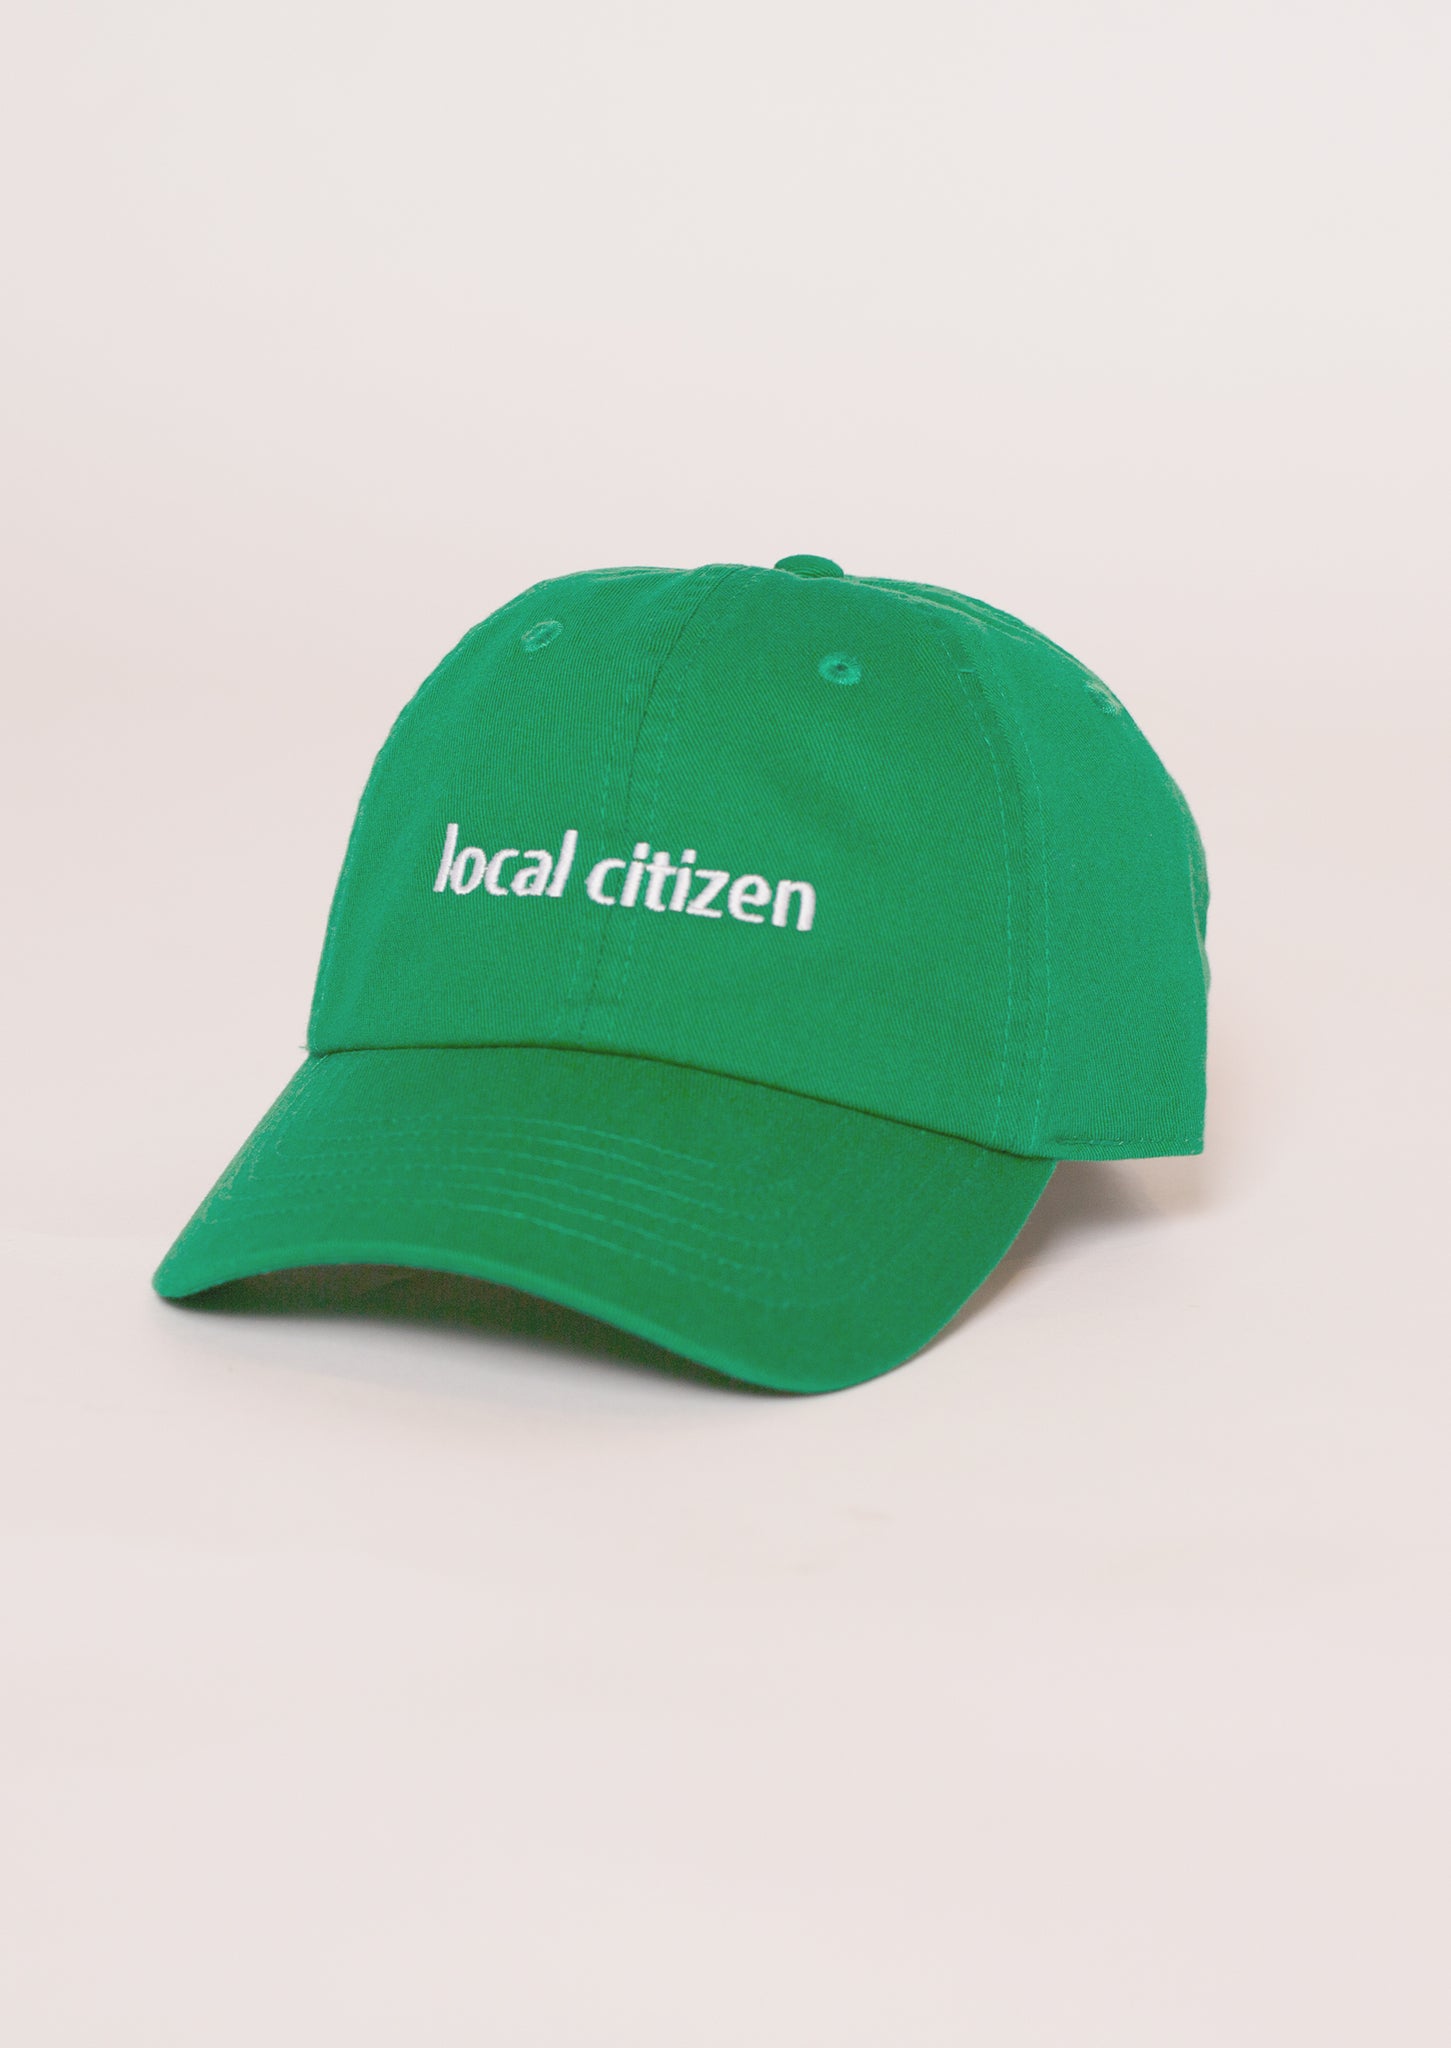 Citizen Cap in Kelly Green